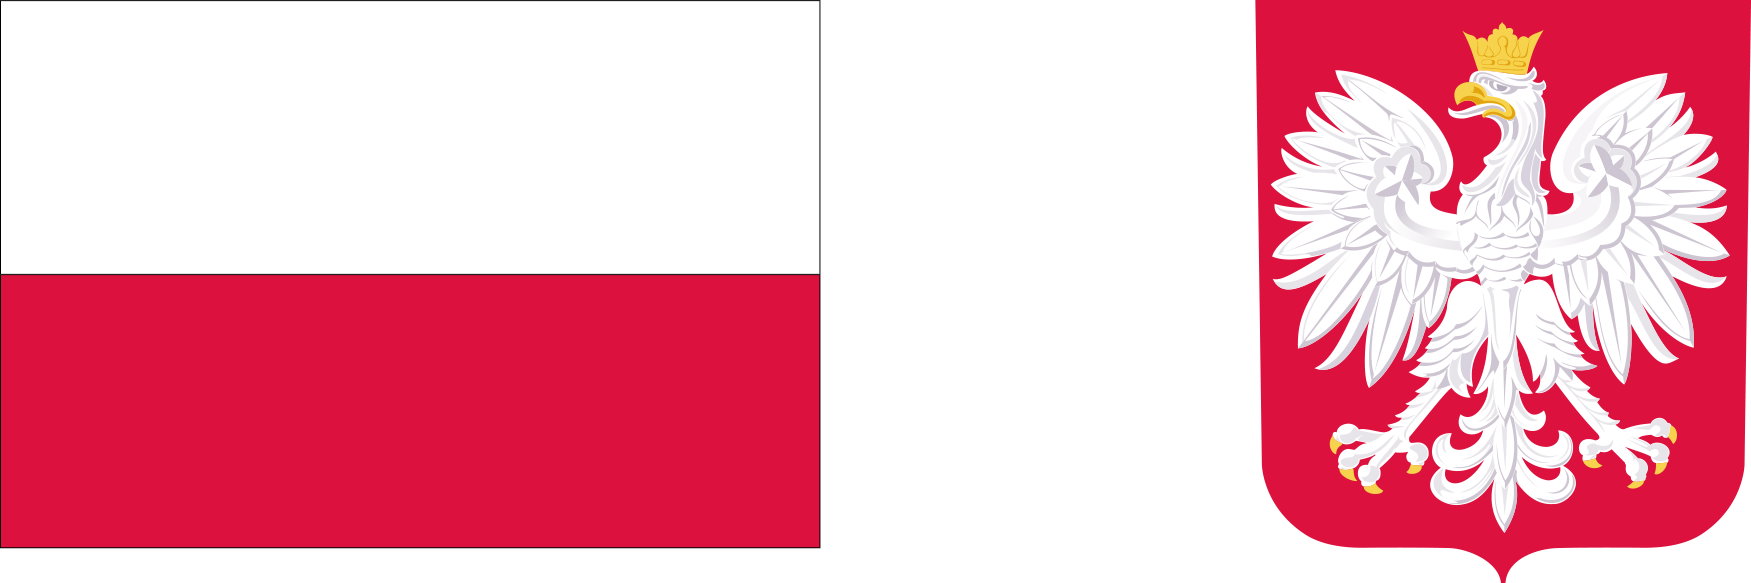 Flaga Polski i godło Polski.